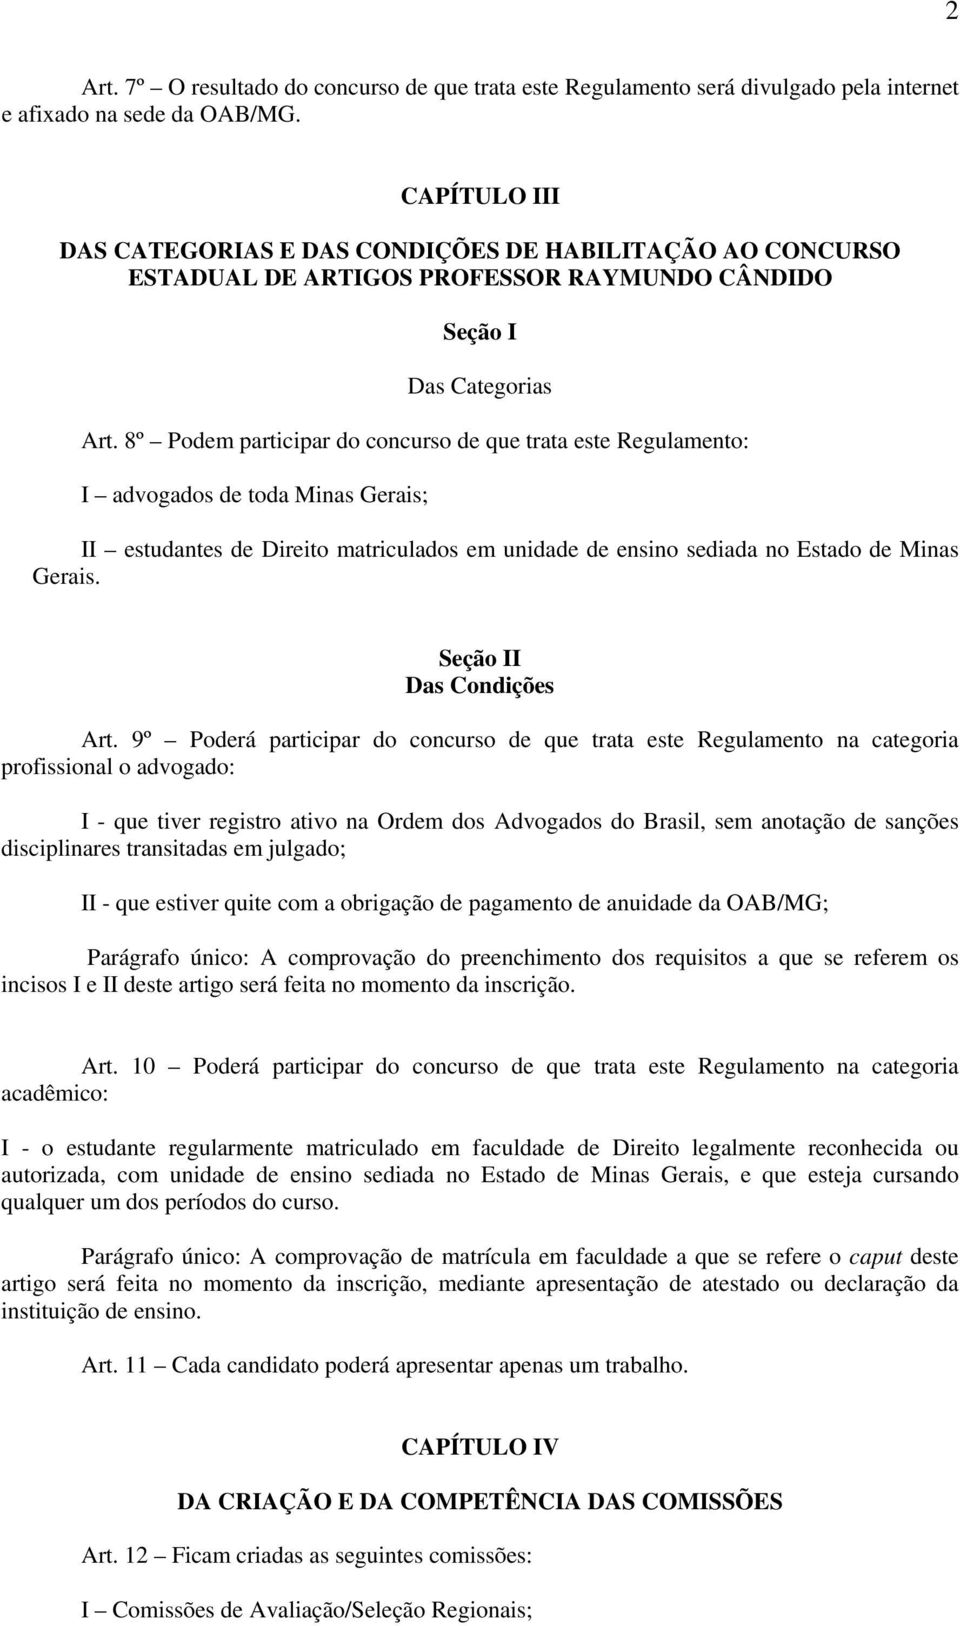 8º Podem participar do concurso de que trata este Regulamento: I advogados de toda Minas Gerais; II estudantes de Direito matriculados em unidade de ensino sediada no Estado de Minas Gerais.